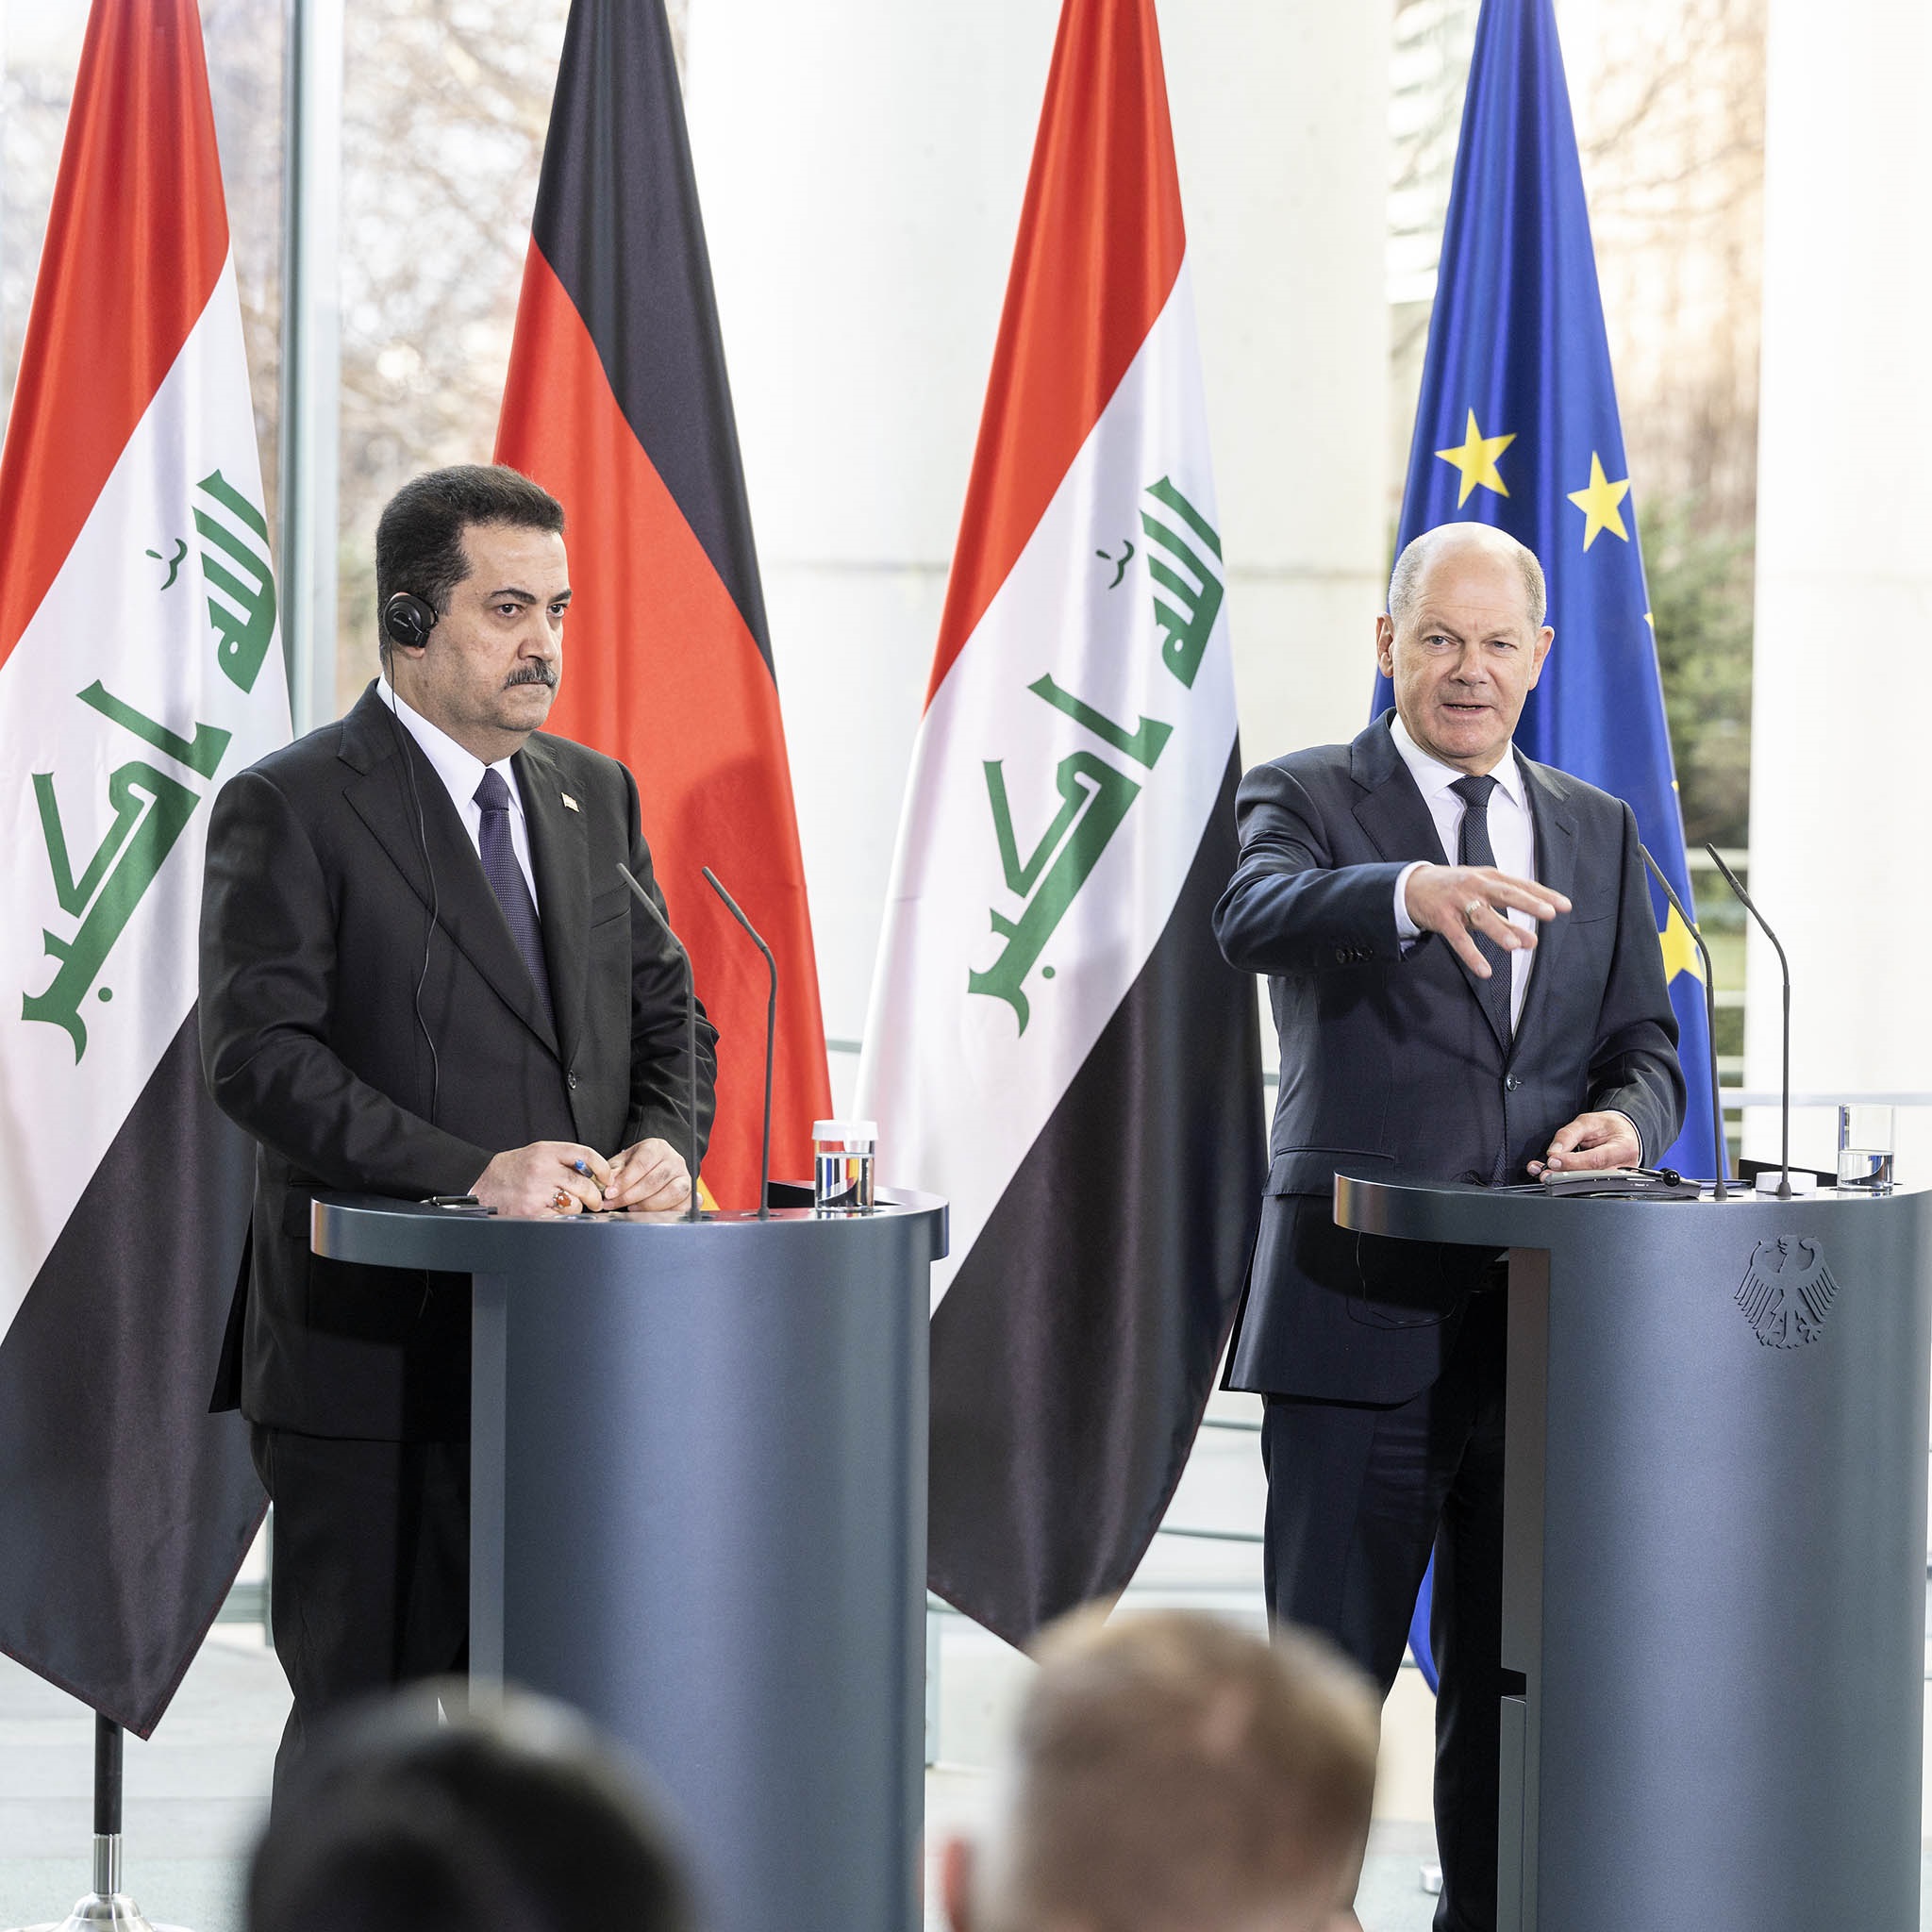 Bundeskanzler Olaf Scholz gibt gemeinsam mit dem irakischen Premierminister Sudani eine Pressekonferenz im Bundeskanzleramt. Das Foto zeigt beide nebeneinander jeweils am Pult stehend. Bundeskanzler Olaf Scholz beantwortet gerade eine Frage und gestikuliert dabei mit der Hand. Im Hintergrund sind die Staatsflaggen Deutschlands und Iraks sichtbar. 